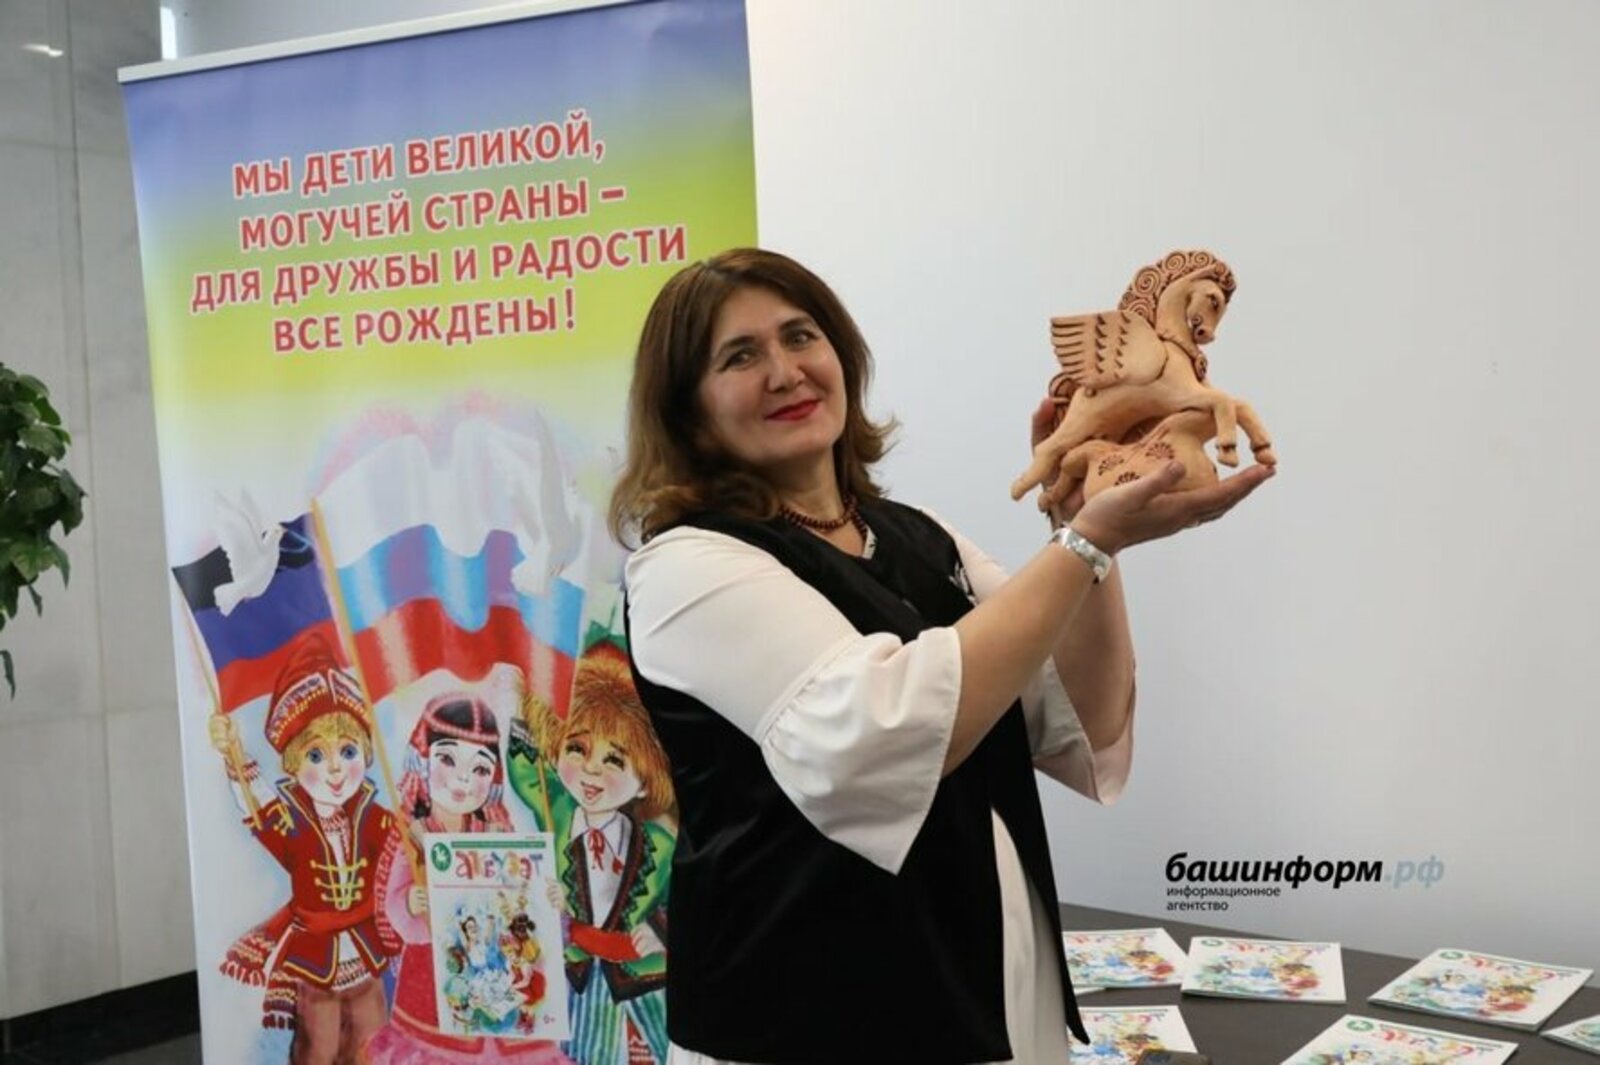 В ГКЗ "Башкортостан" состоялась презентация  журнала «Акбузат», выпущенного для детей Донецкой Народной Республики.